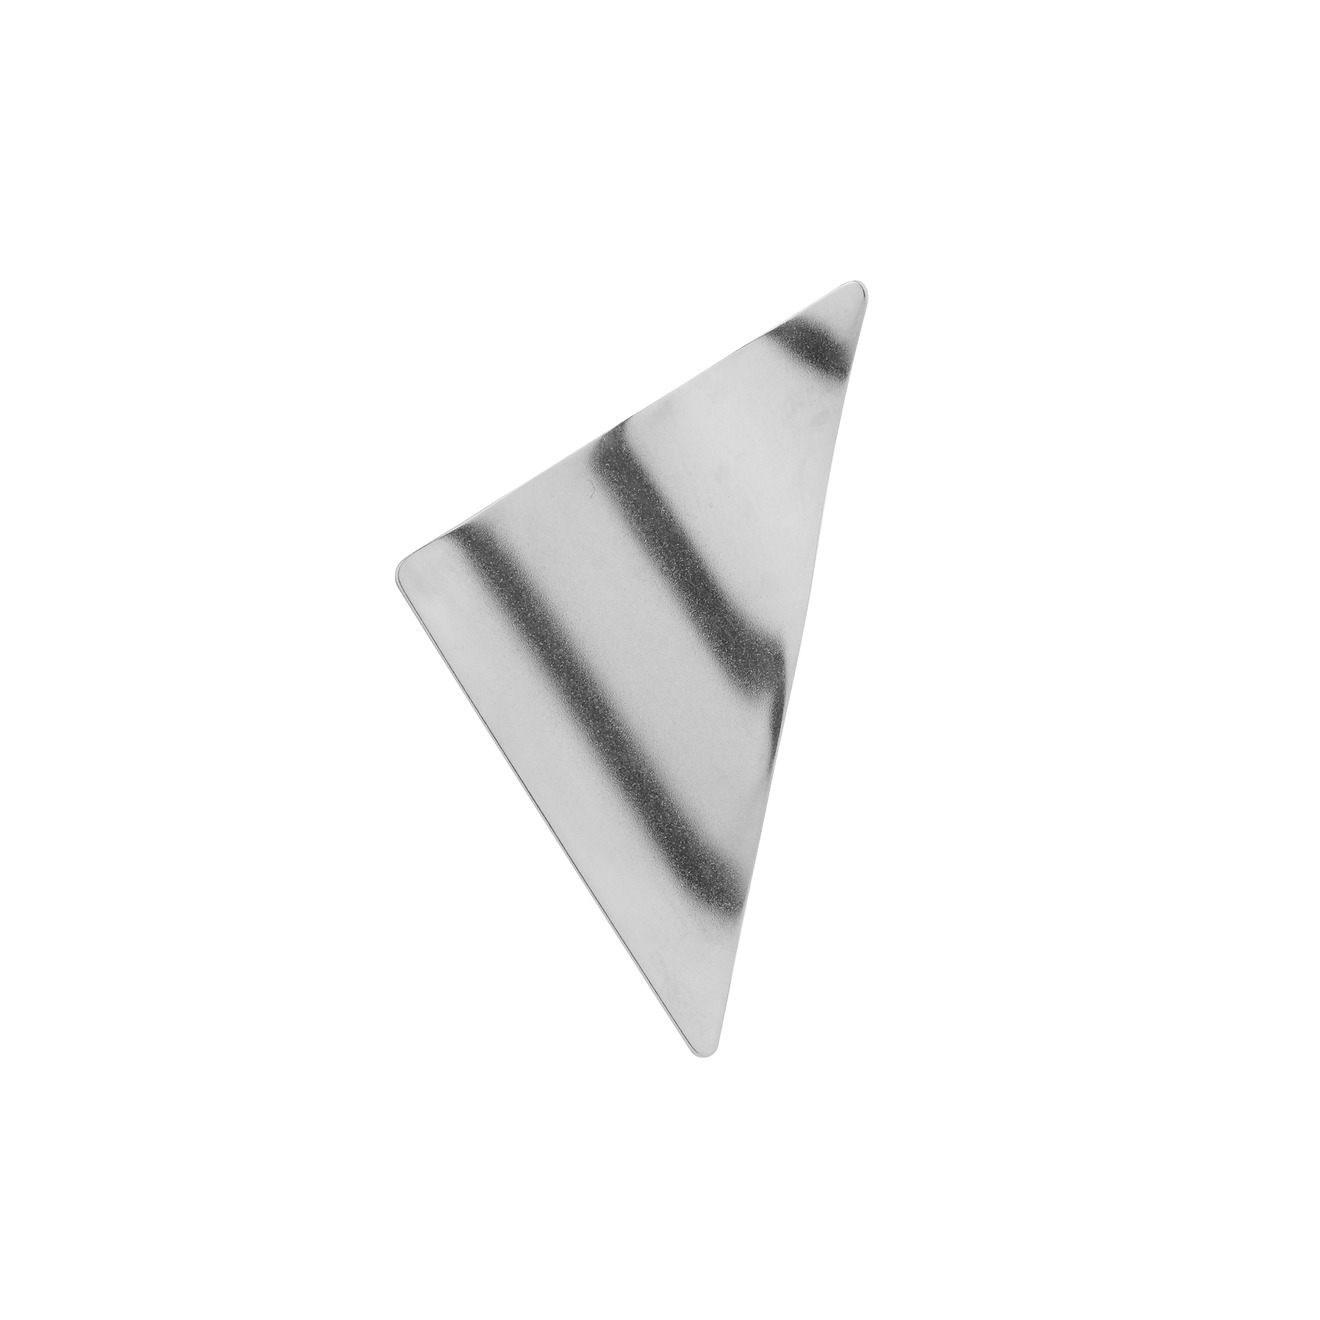 khoshtrik треугольная позолоченная моносерьга из серебра Khoshtrik Треугольная моносерьга из серебра, покрытая родием